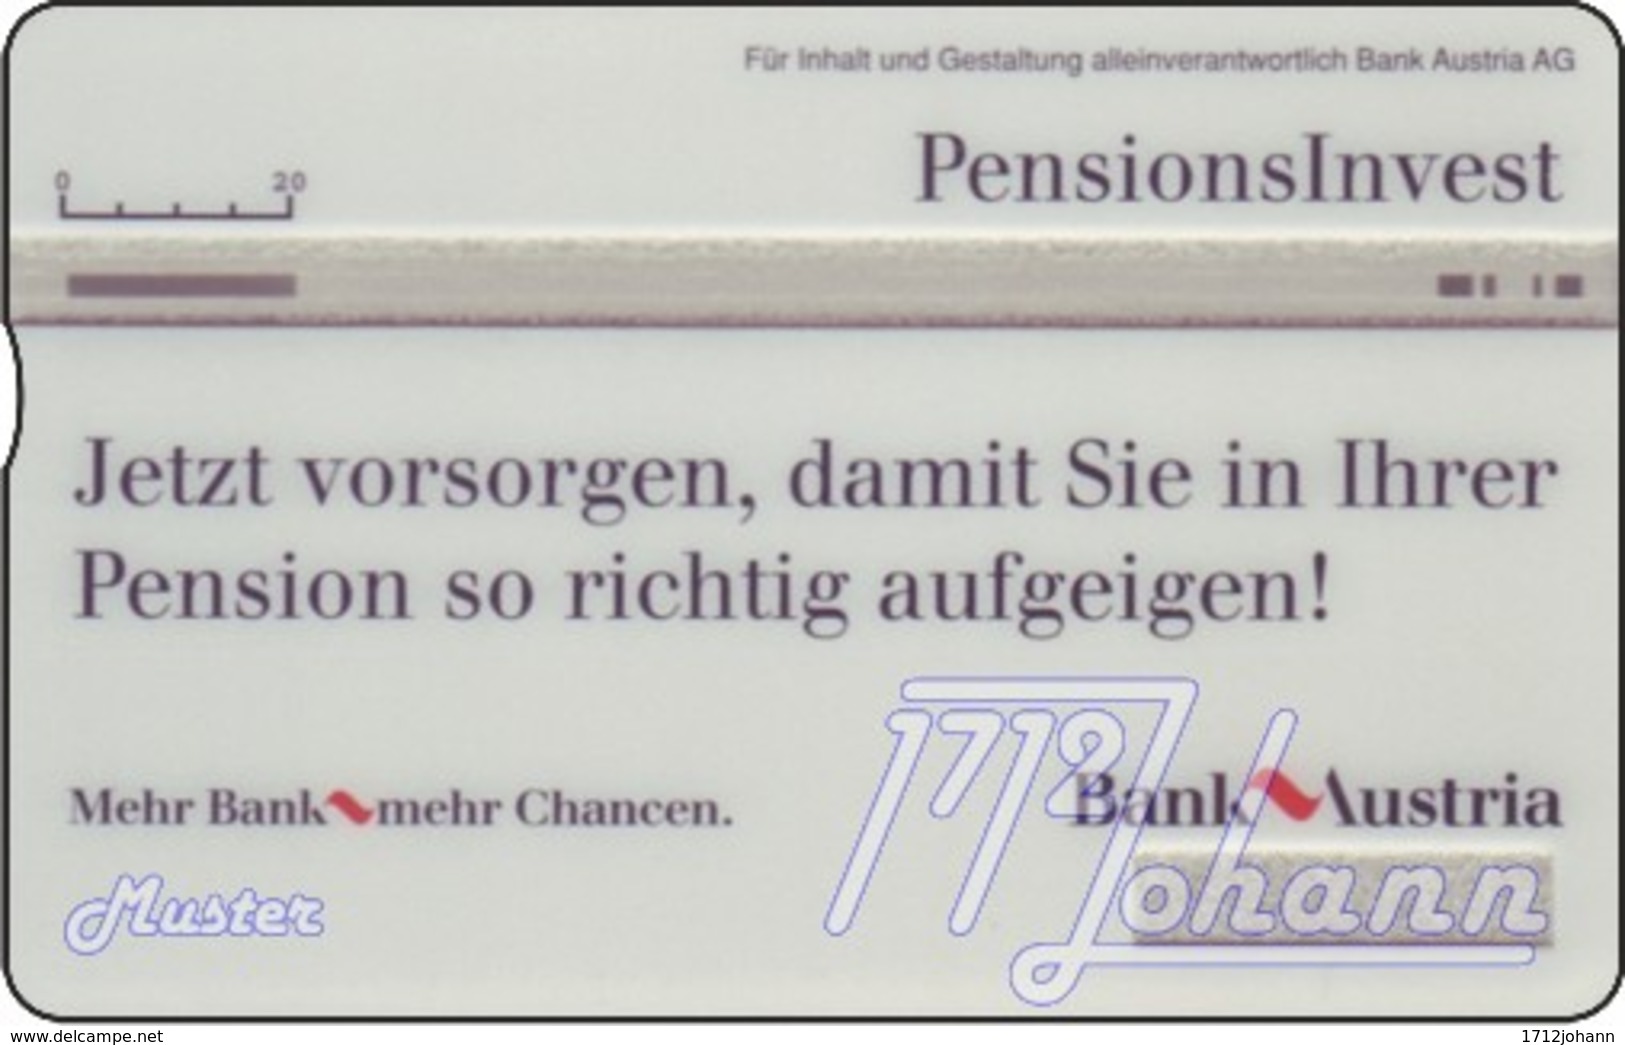 TWK Österreich Privat: "Bank Austria - Strauss" Gebr. - Oesterreich